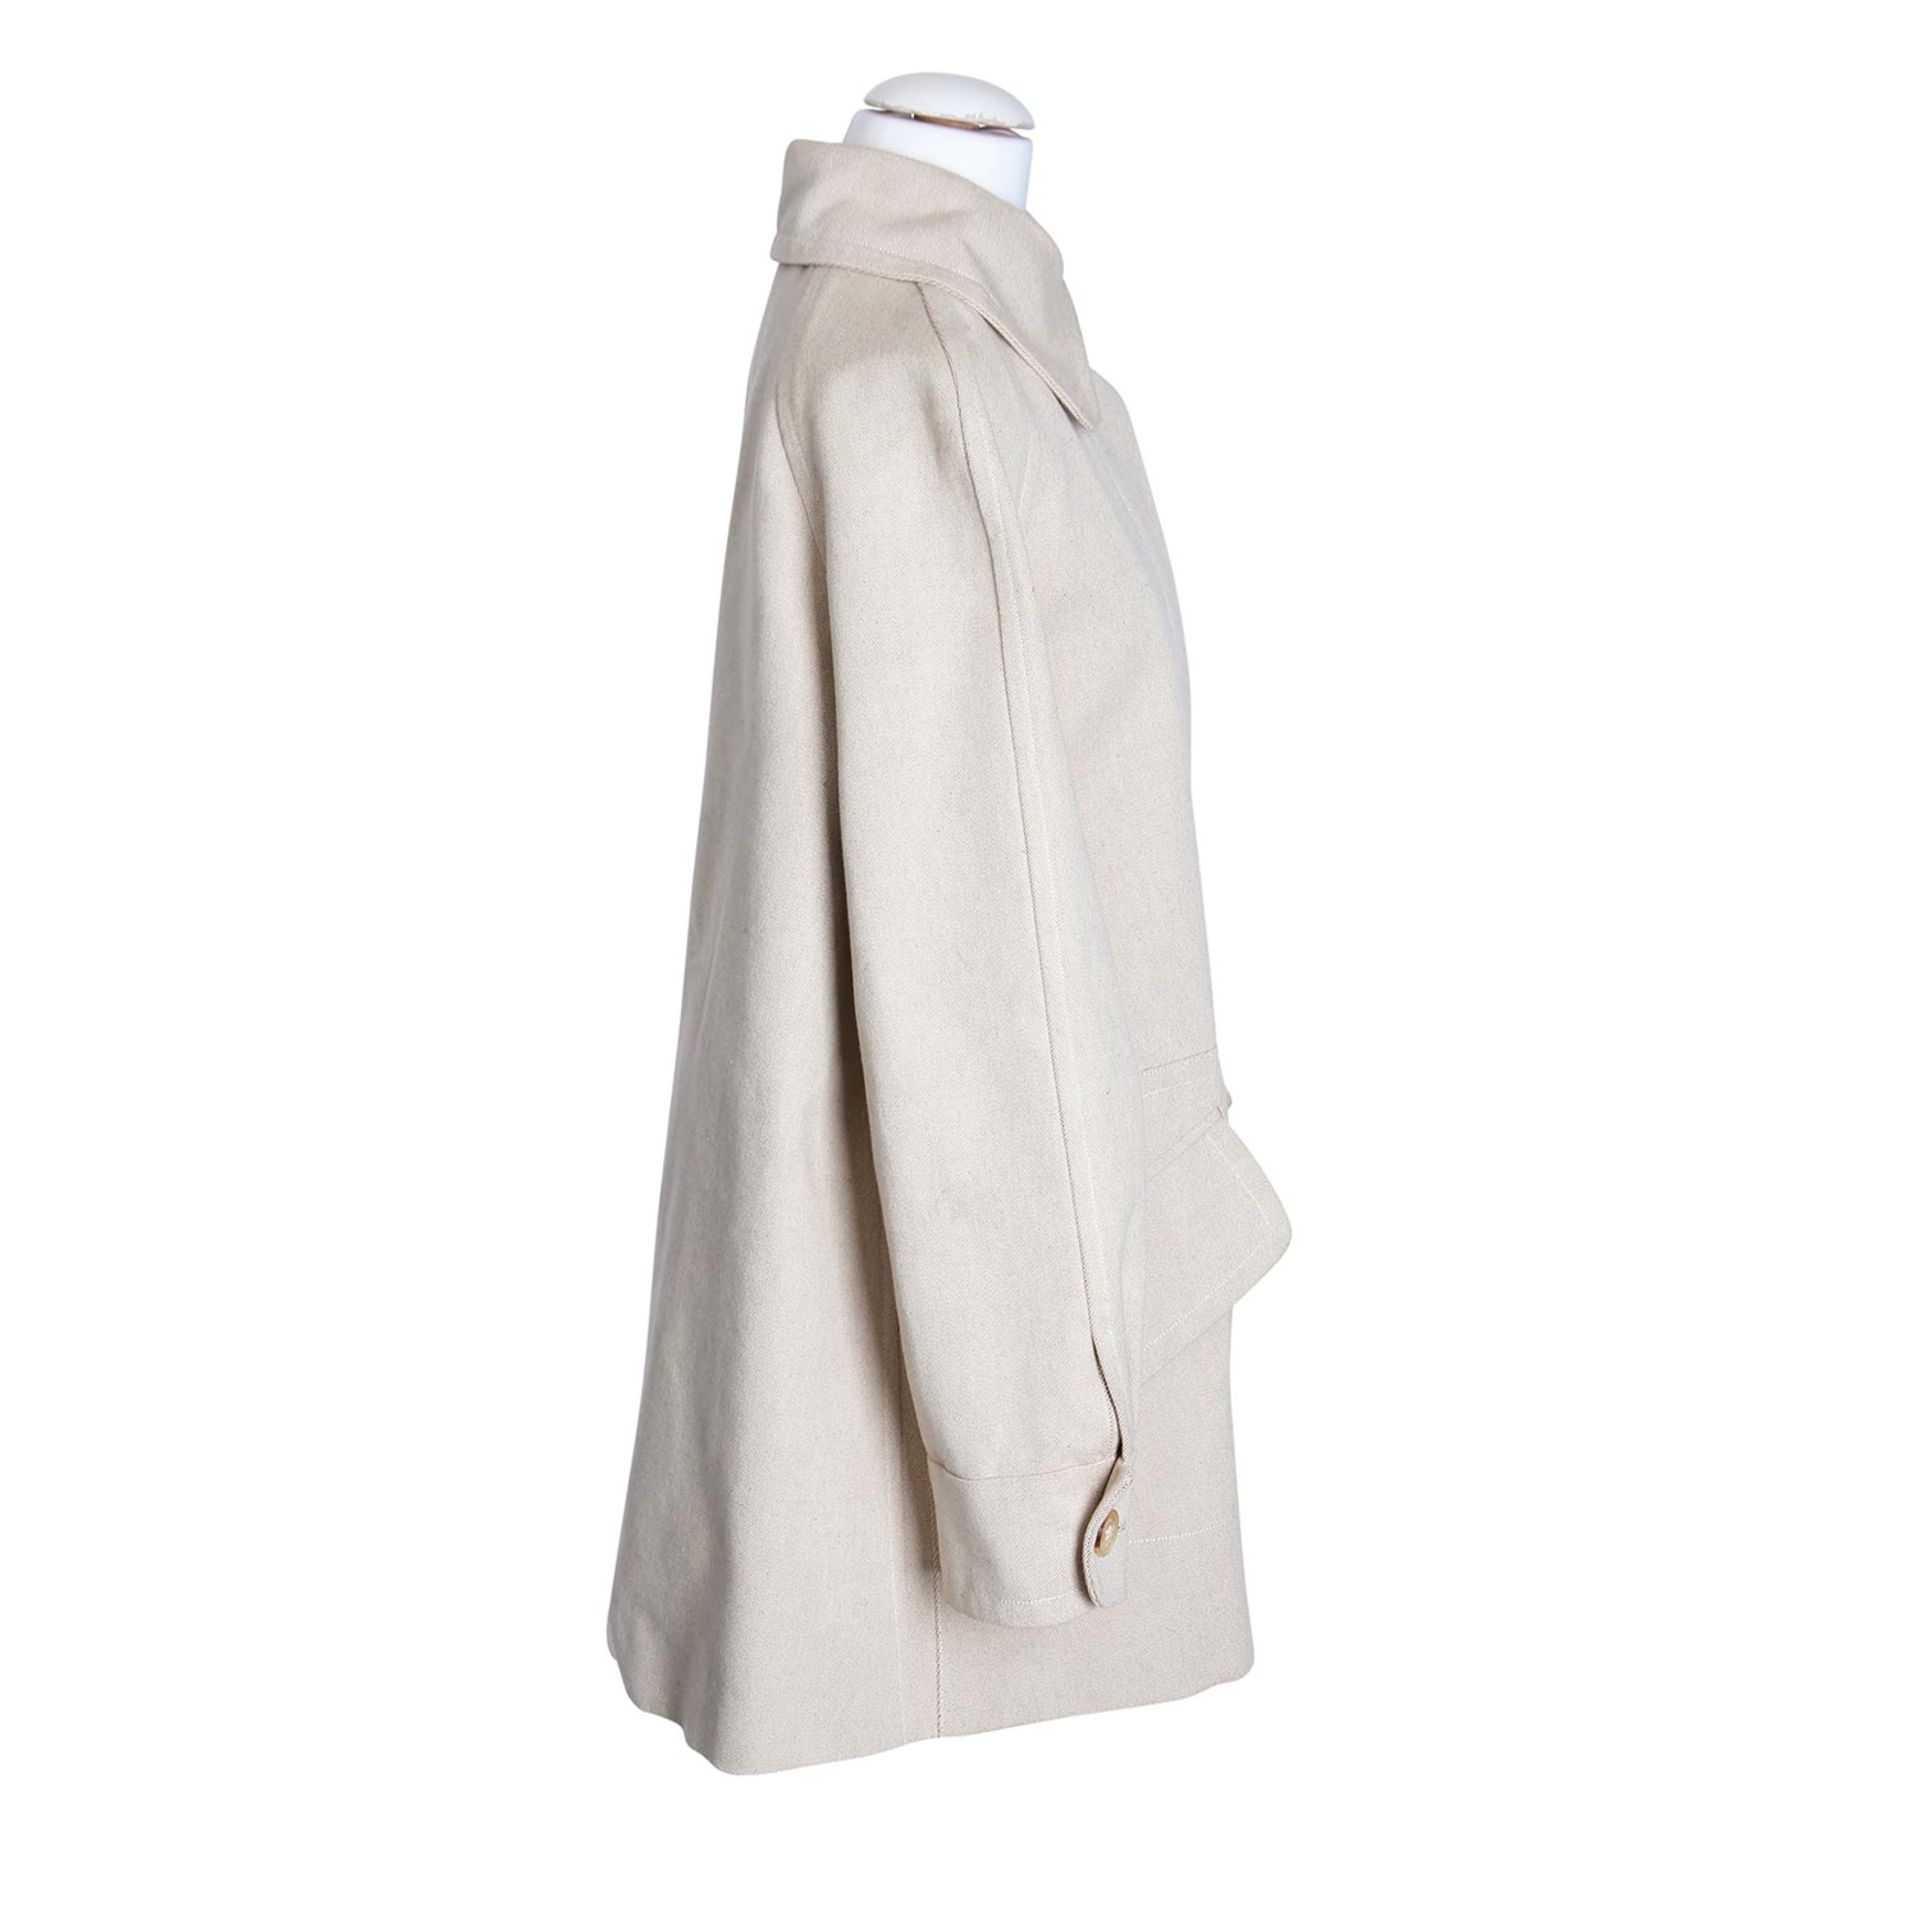 HERMÈS Kurz-Mantel, Gr. 38.100% Baumwolle. Strukturiertes, beigefarbenes Modell mit Umlegekragen, - Bild 3 aus 4